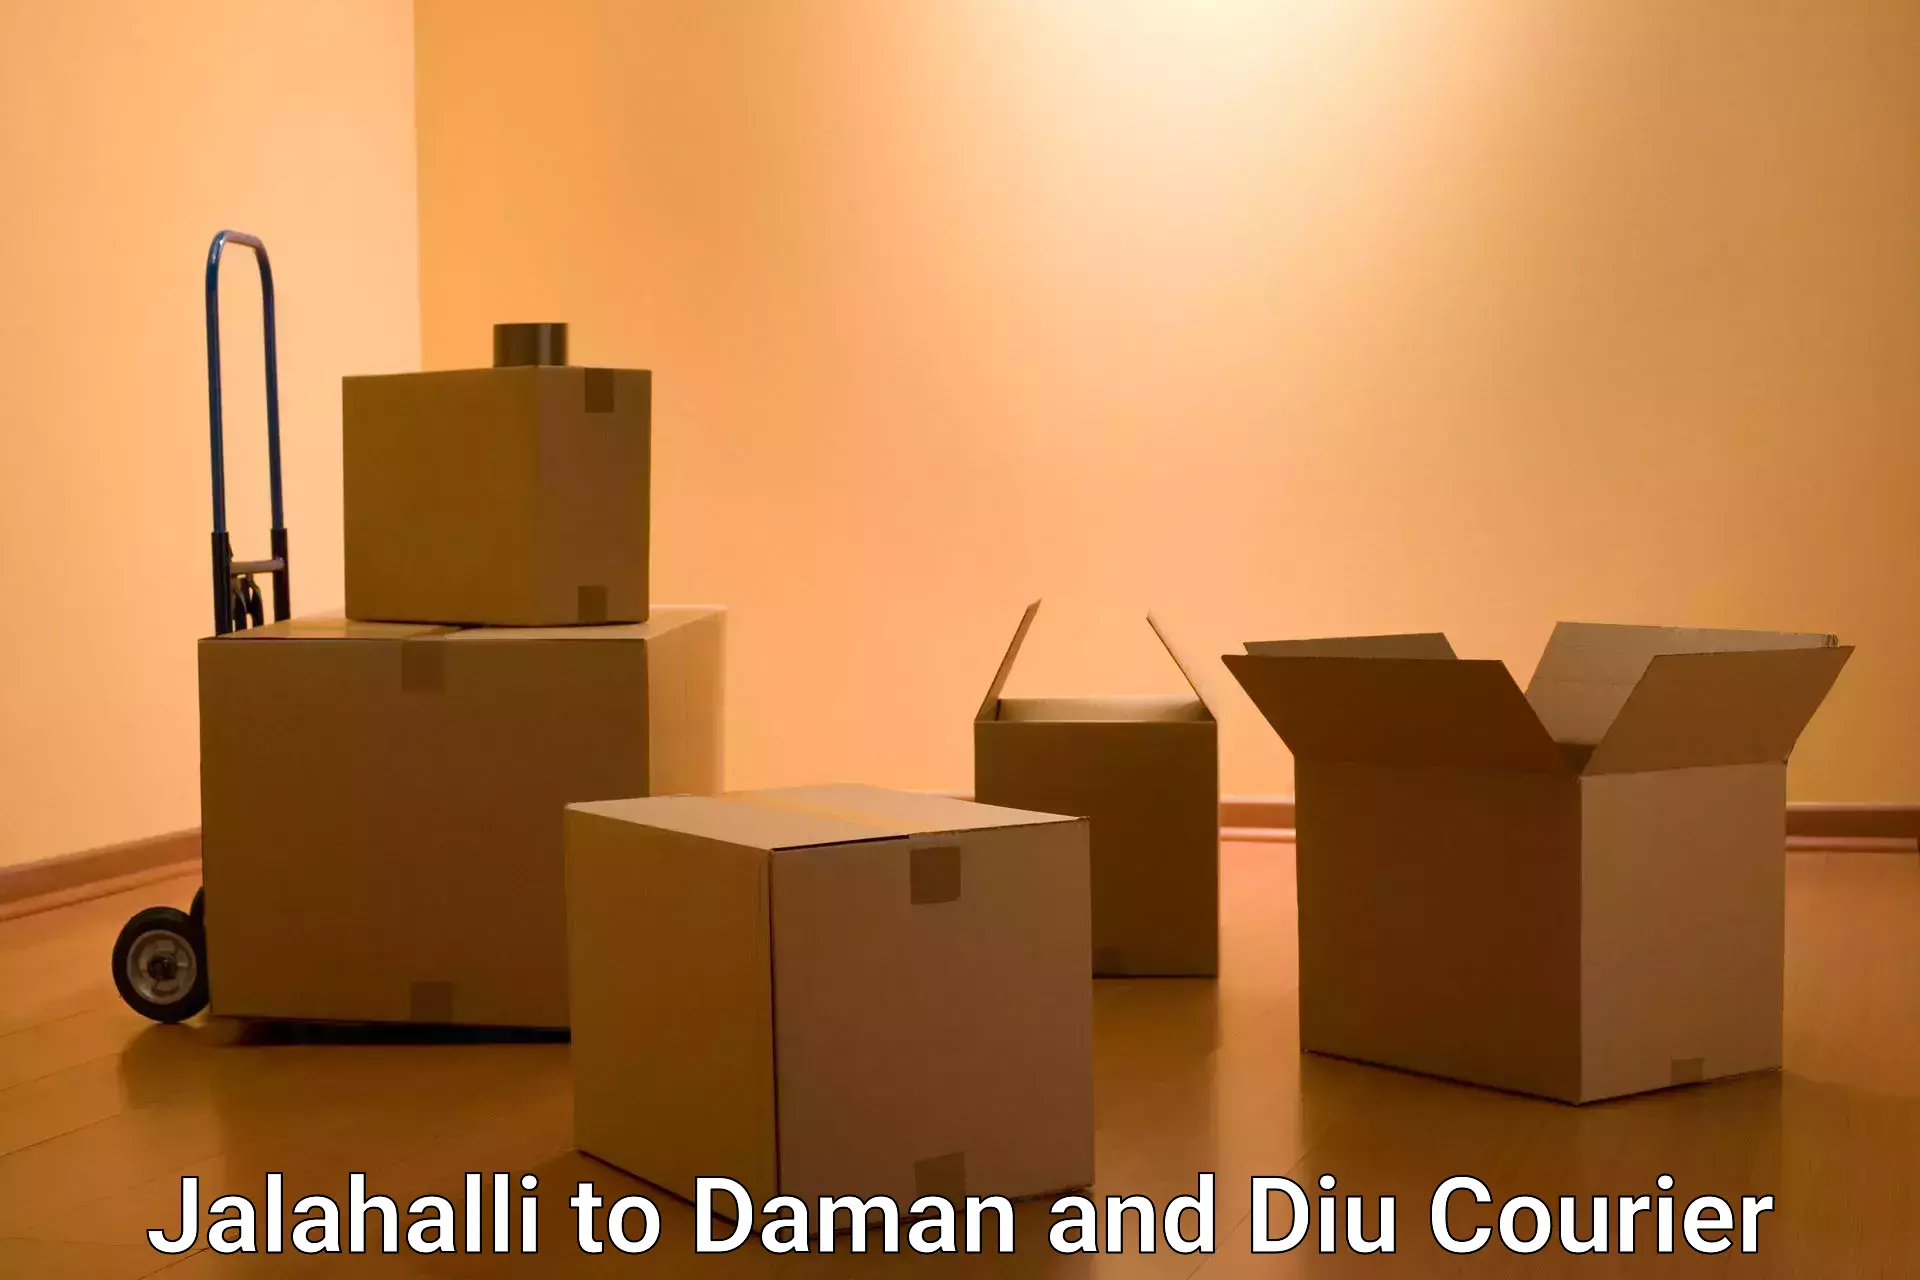 Local courier options Jalahalli to Daman and Diu